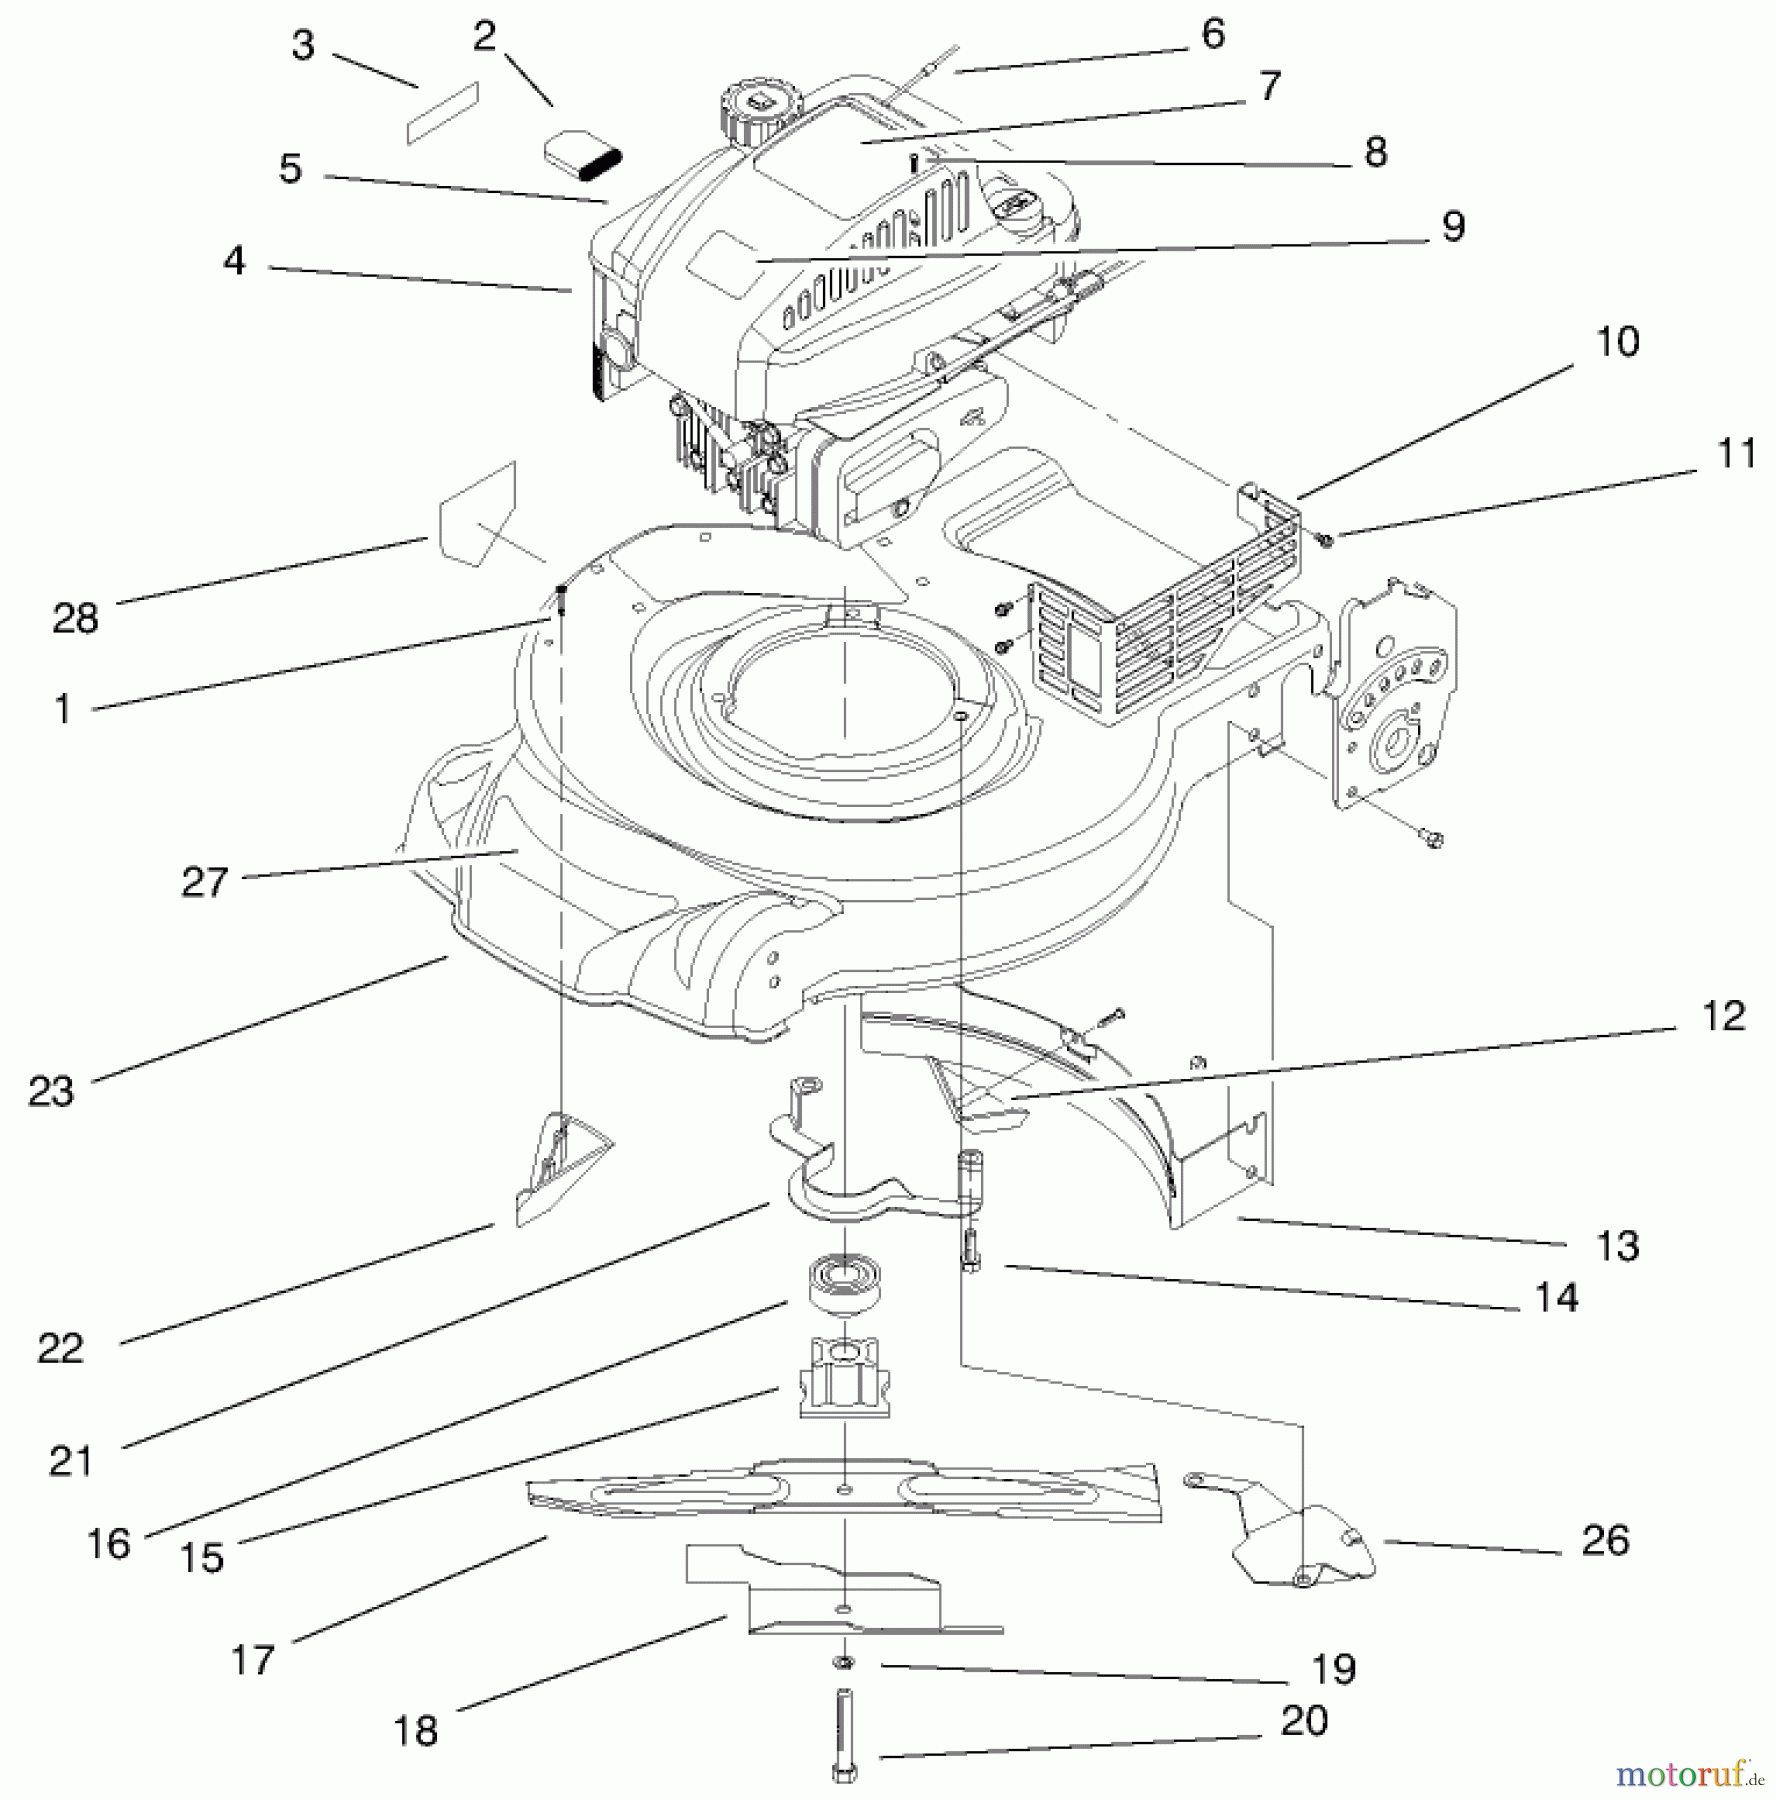  Toro Neu Mowers, Walk-Behind Seite 1 20452 (R-21S) - Toro Recycler Mower, R-21S, 1998 (8900001-8999999) ENGINE ASSEMBLY